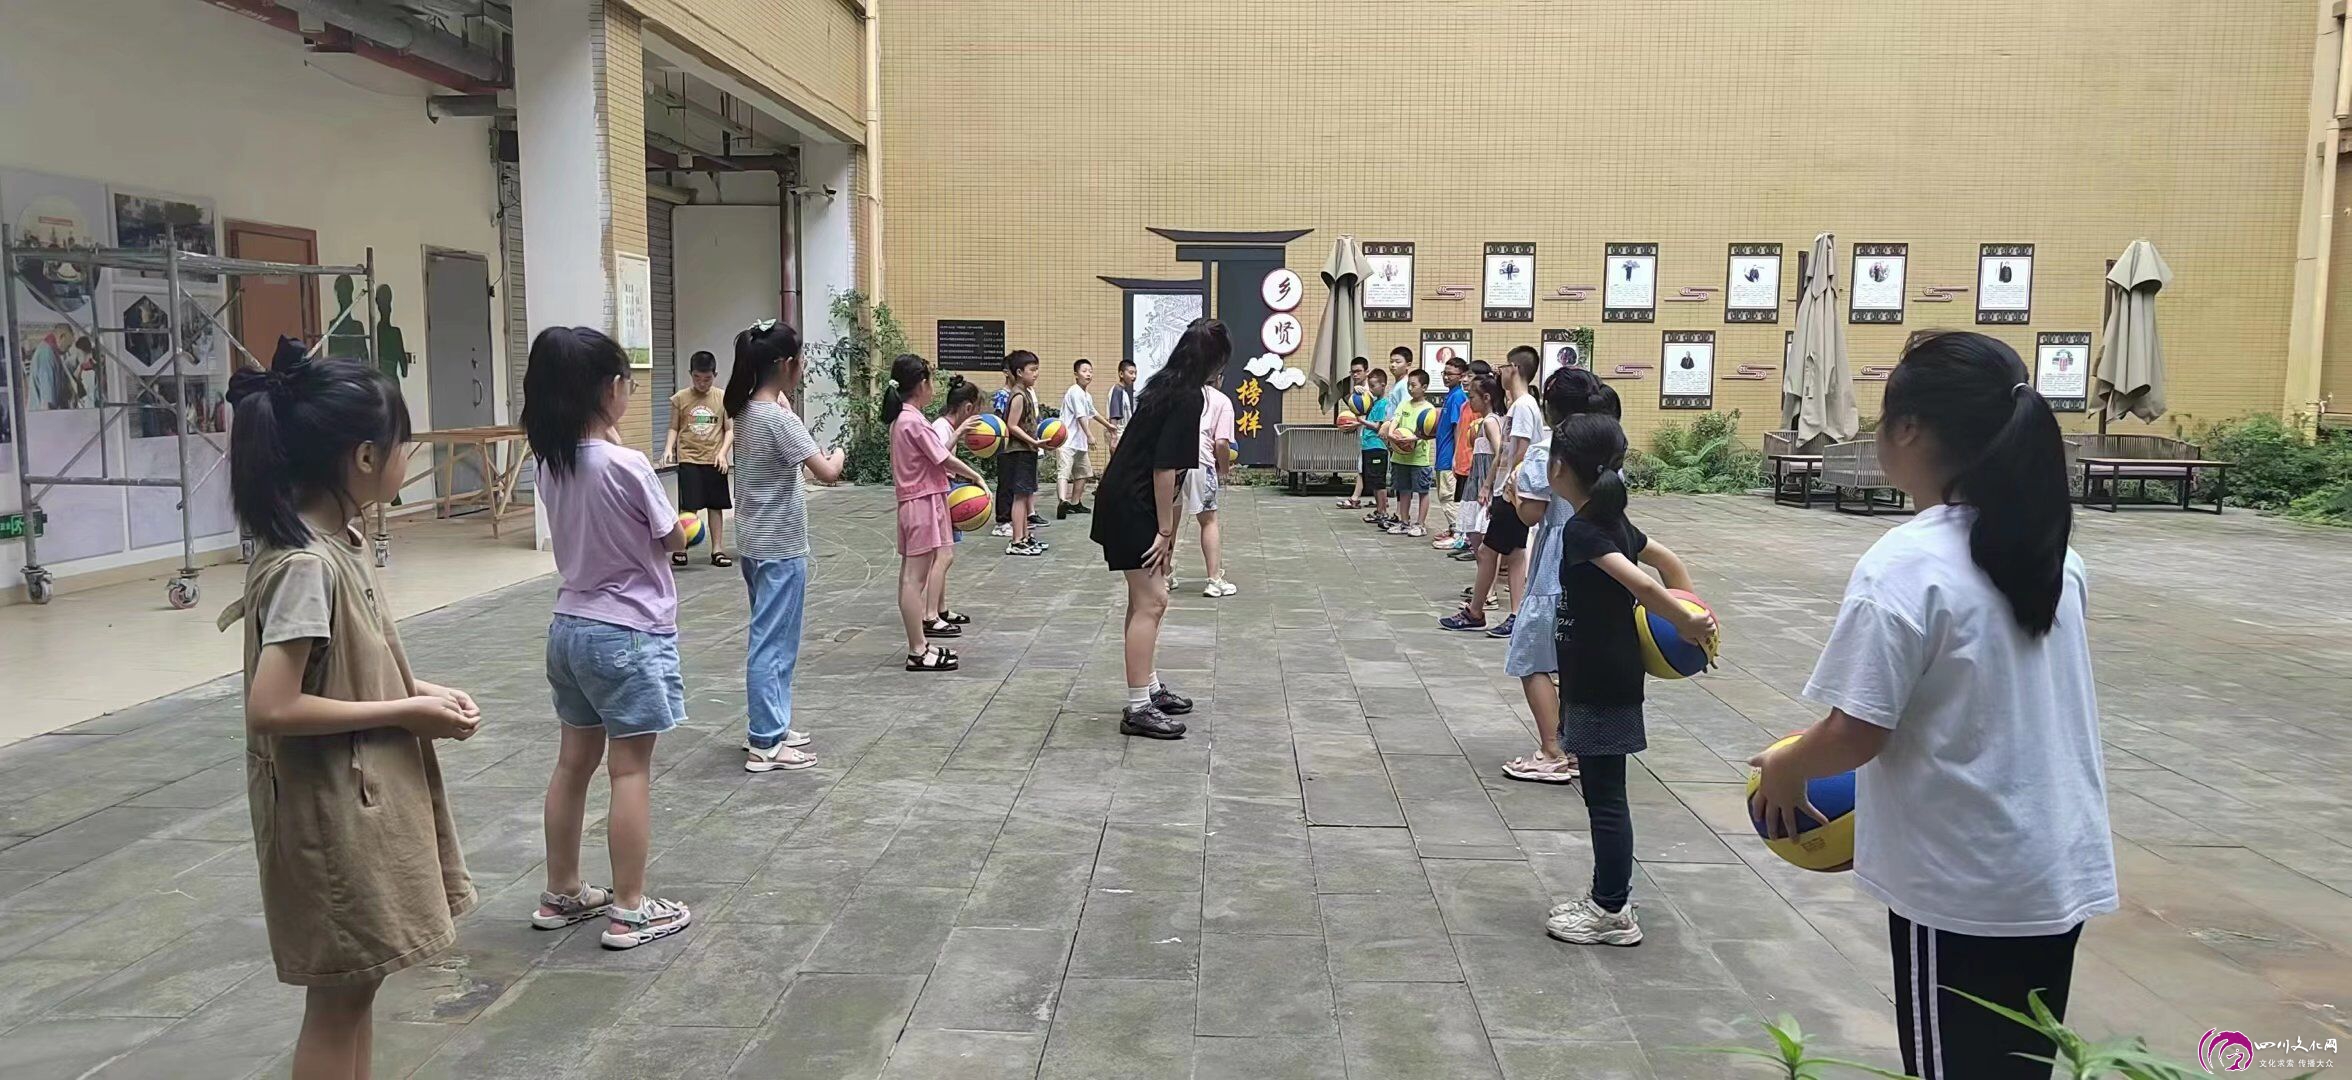 图为小朋友正在上篮球课 四川文化网通讯员 张雪供图